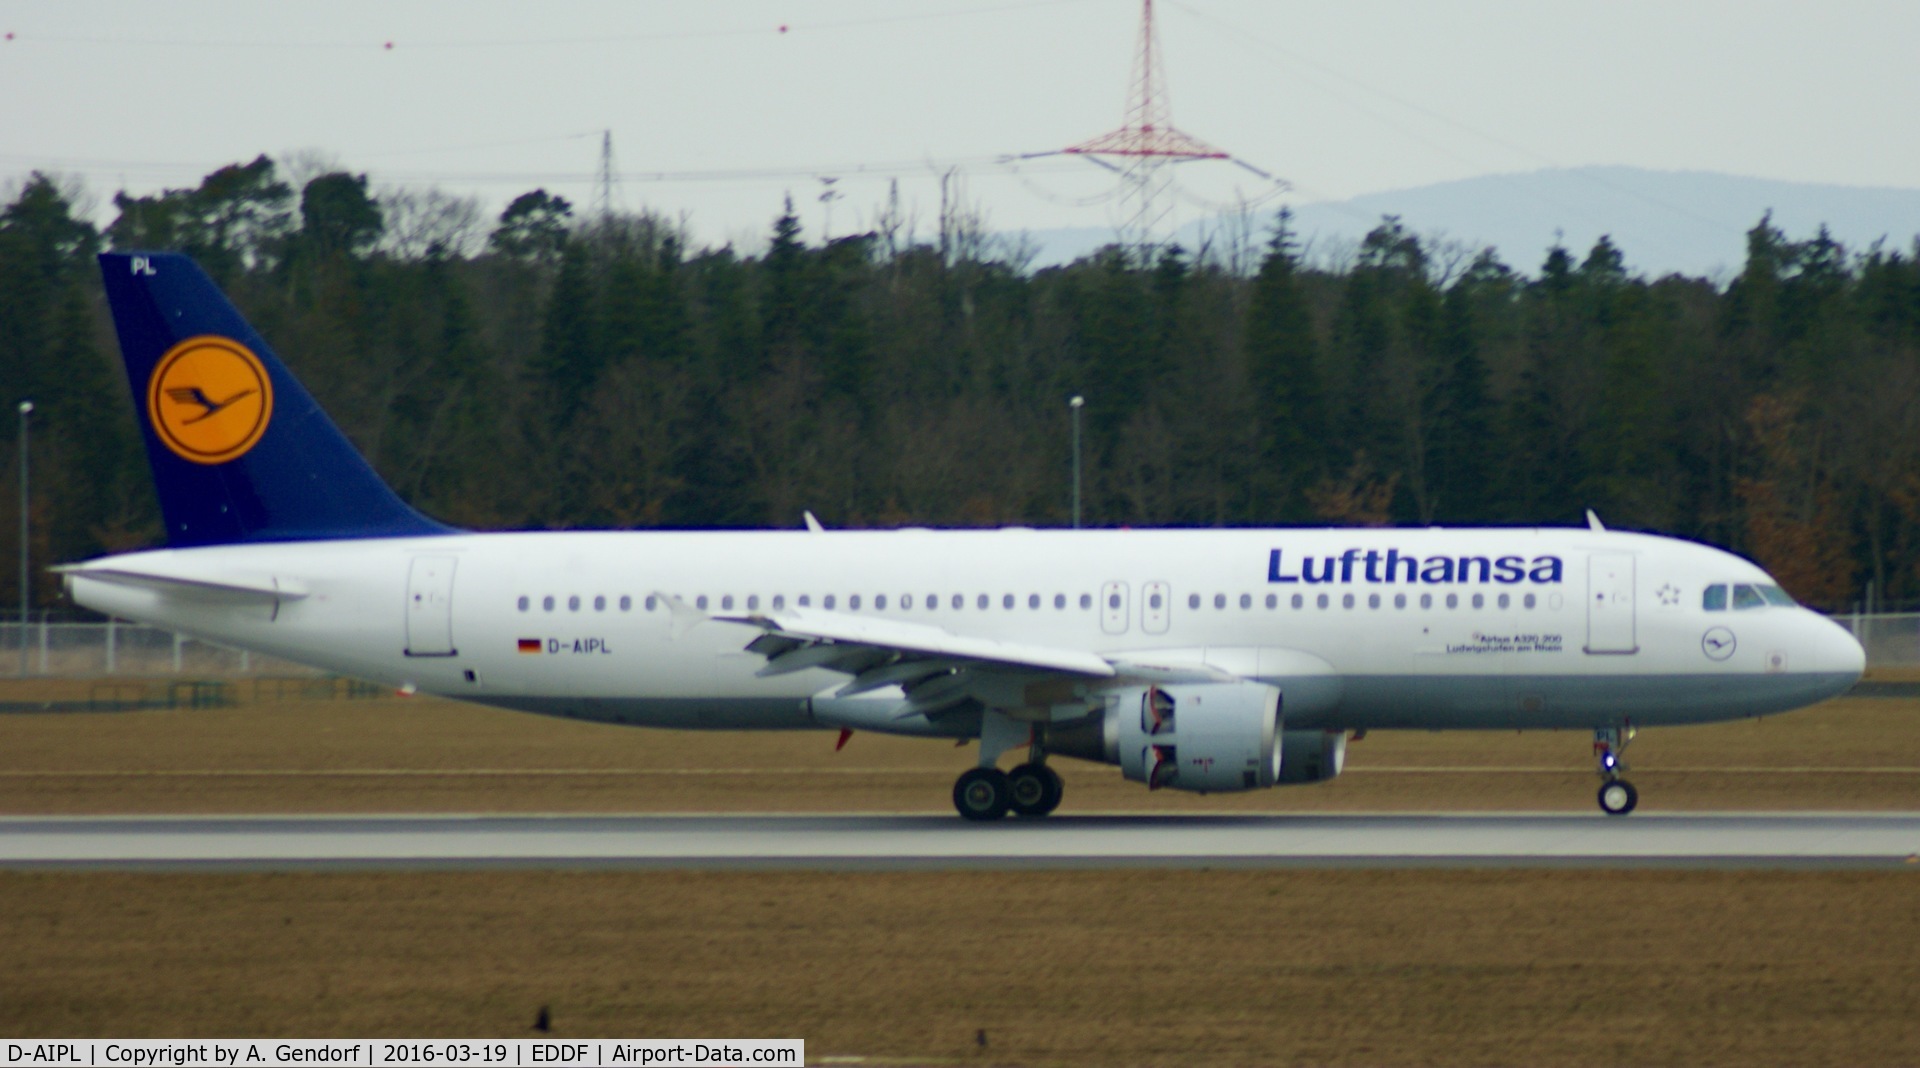 D-AIPL, 1989 Airbus A320-211 C/N 094, Lufthansa, is here at Frankfurt Rhein/Main(EDDF)